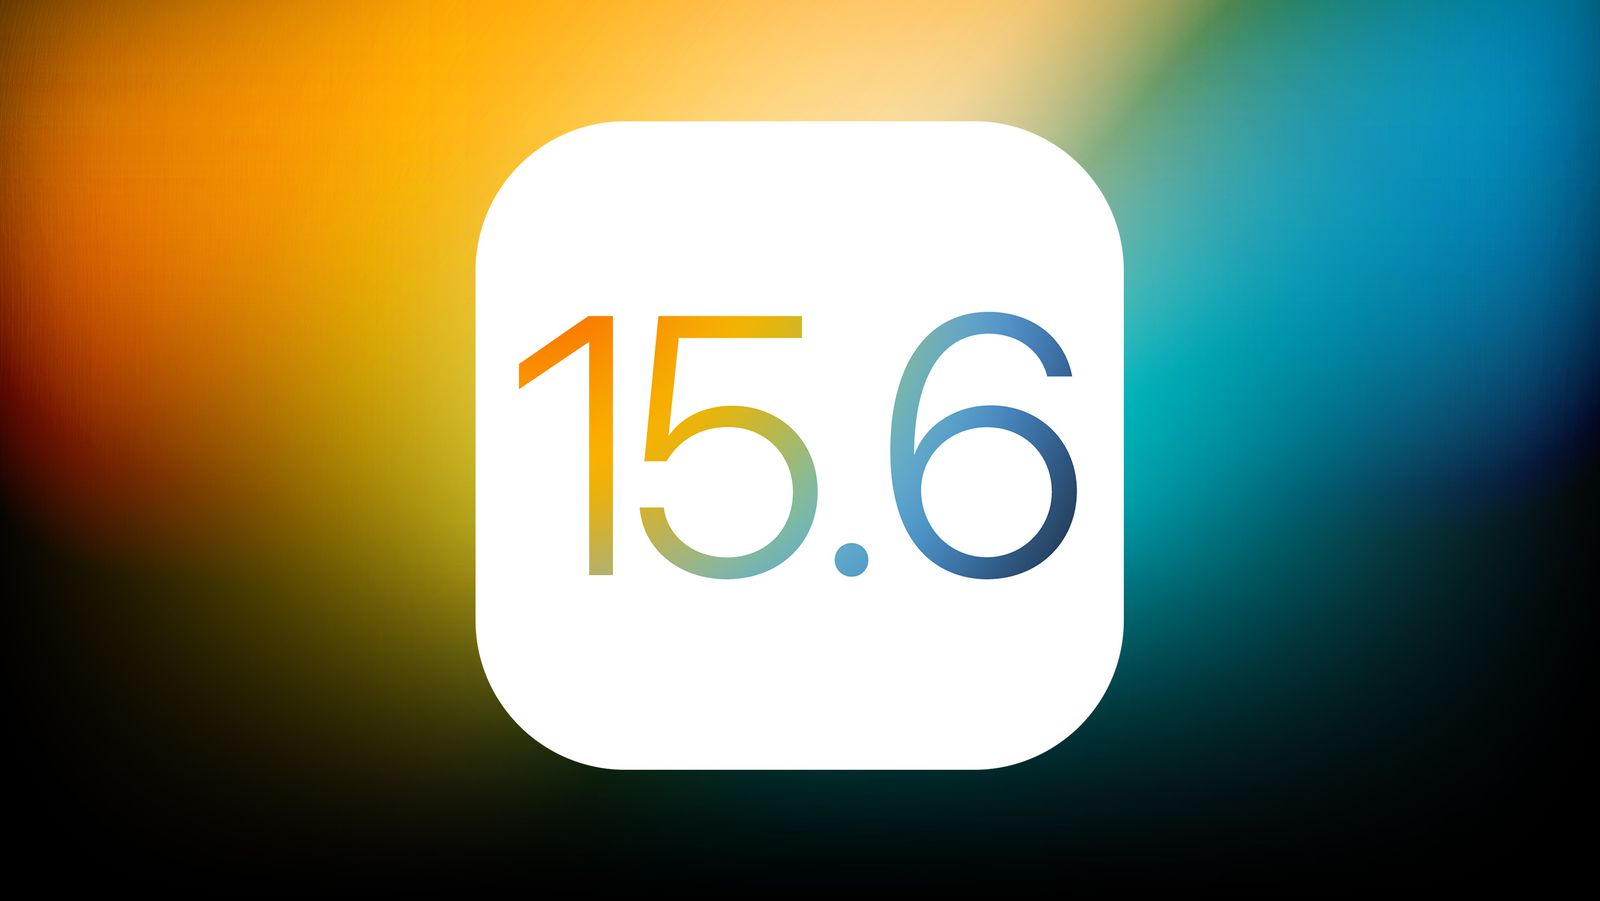 Firma Apple wydała iOS 15.6: powiemy Ci, co nowego i kiedy spodziewać się oprogramowania